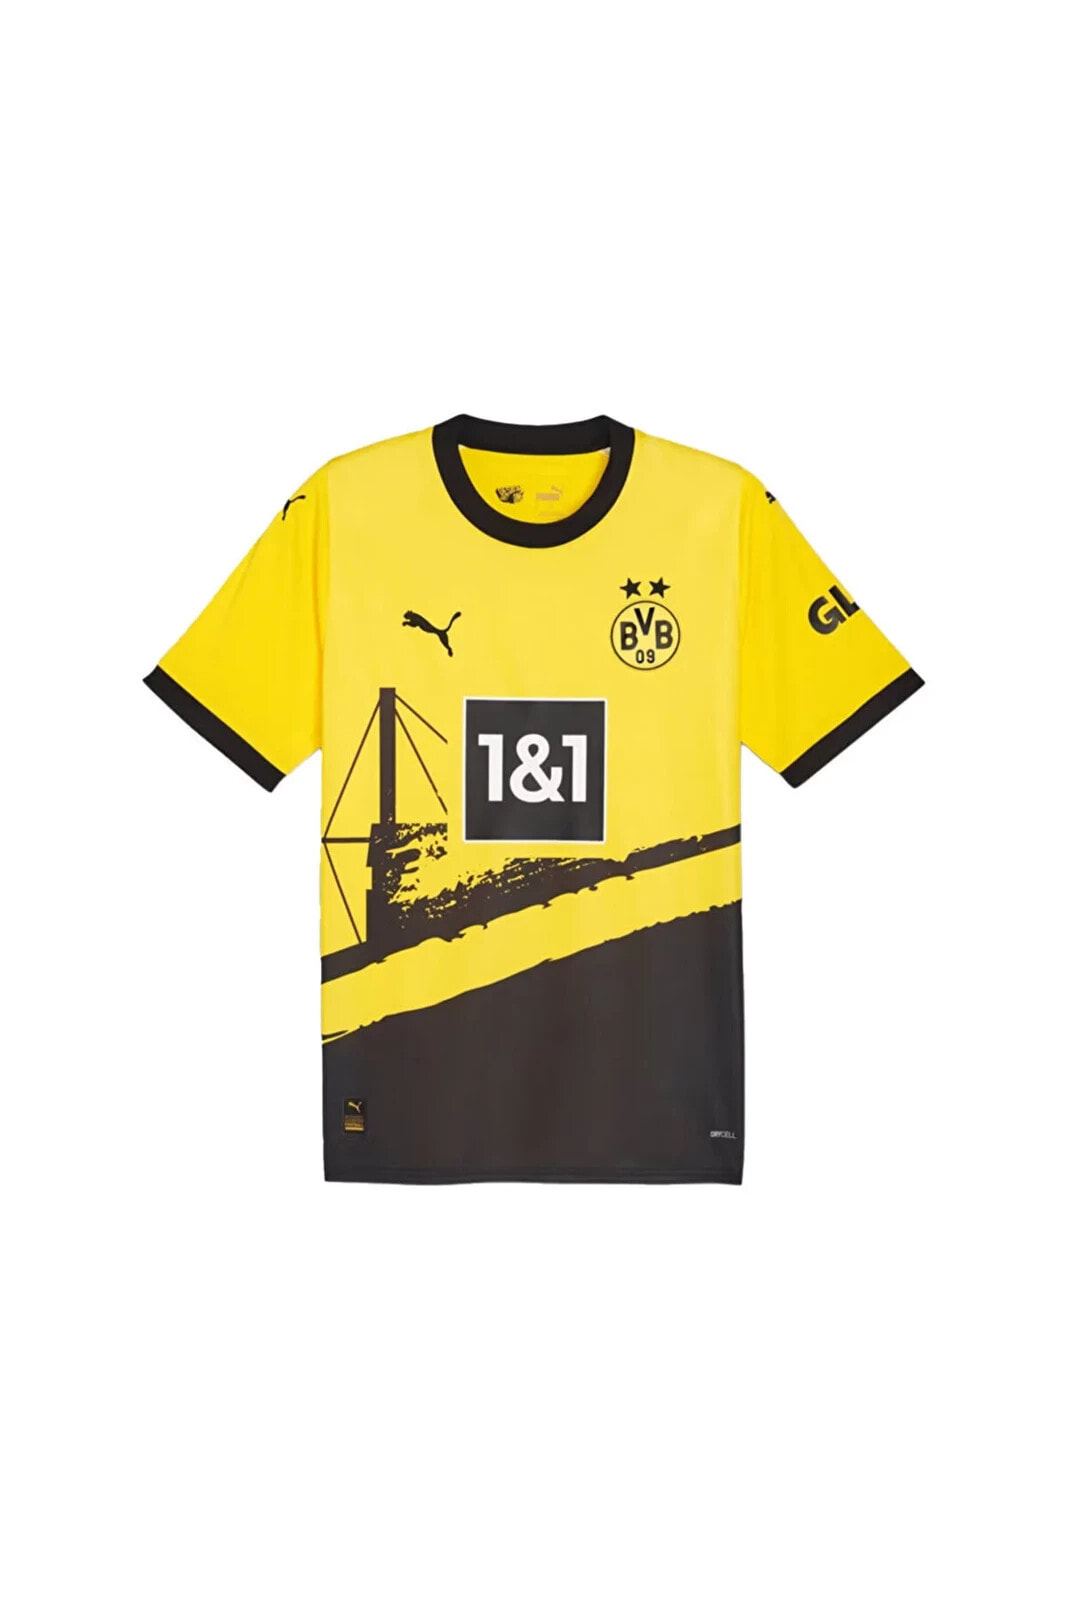 Bvb Home Jersey Erkek Futbol Borussia Dortmund Forması 77060401 Sarı